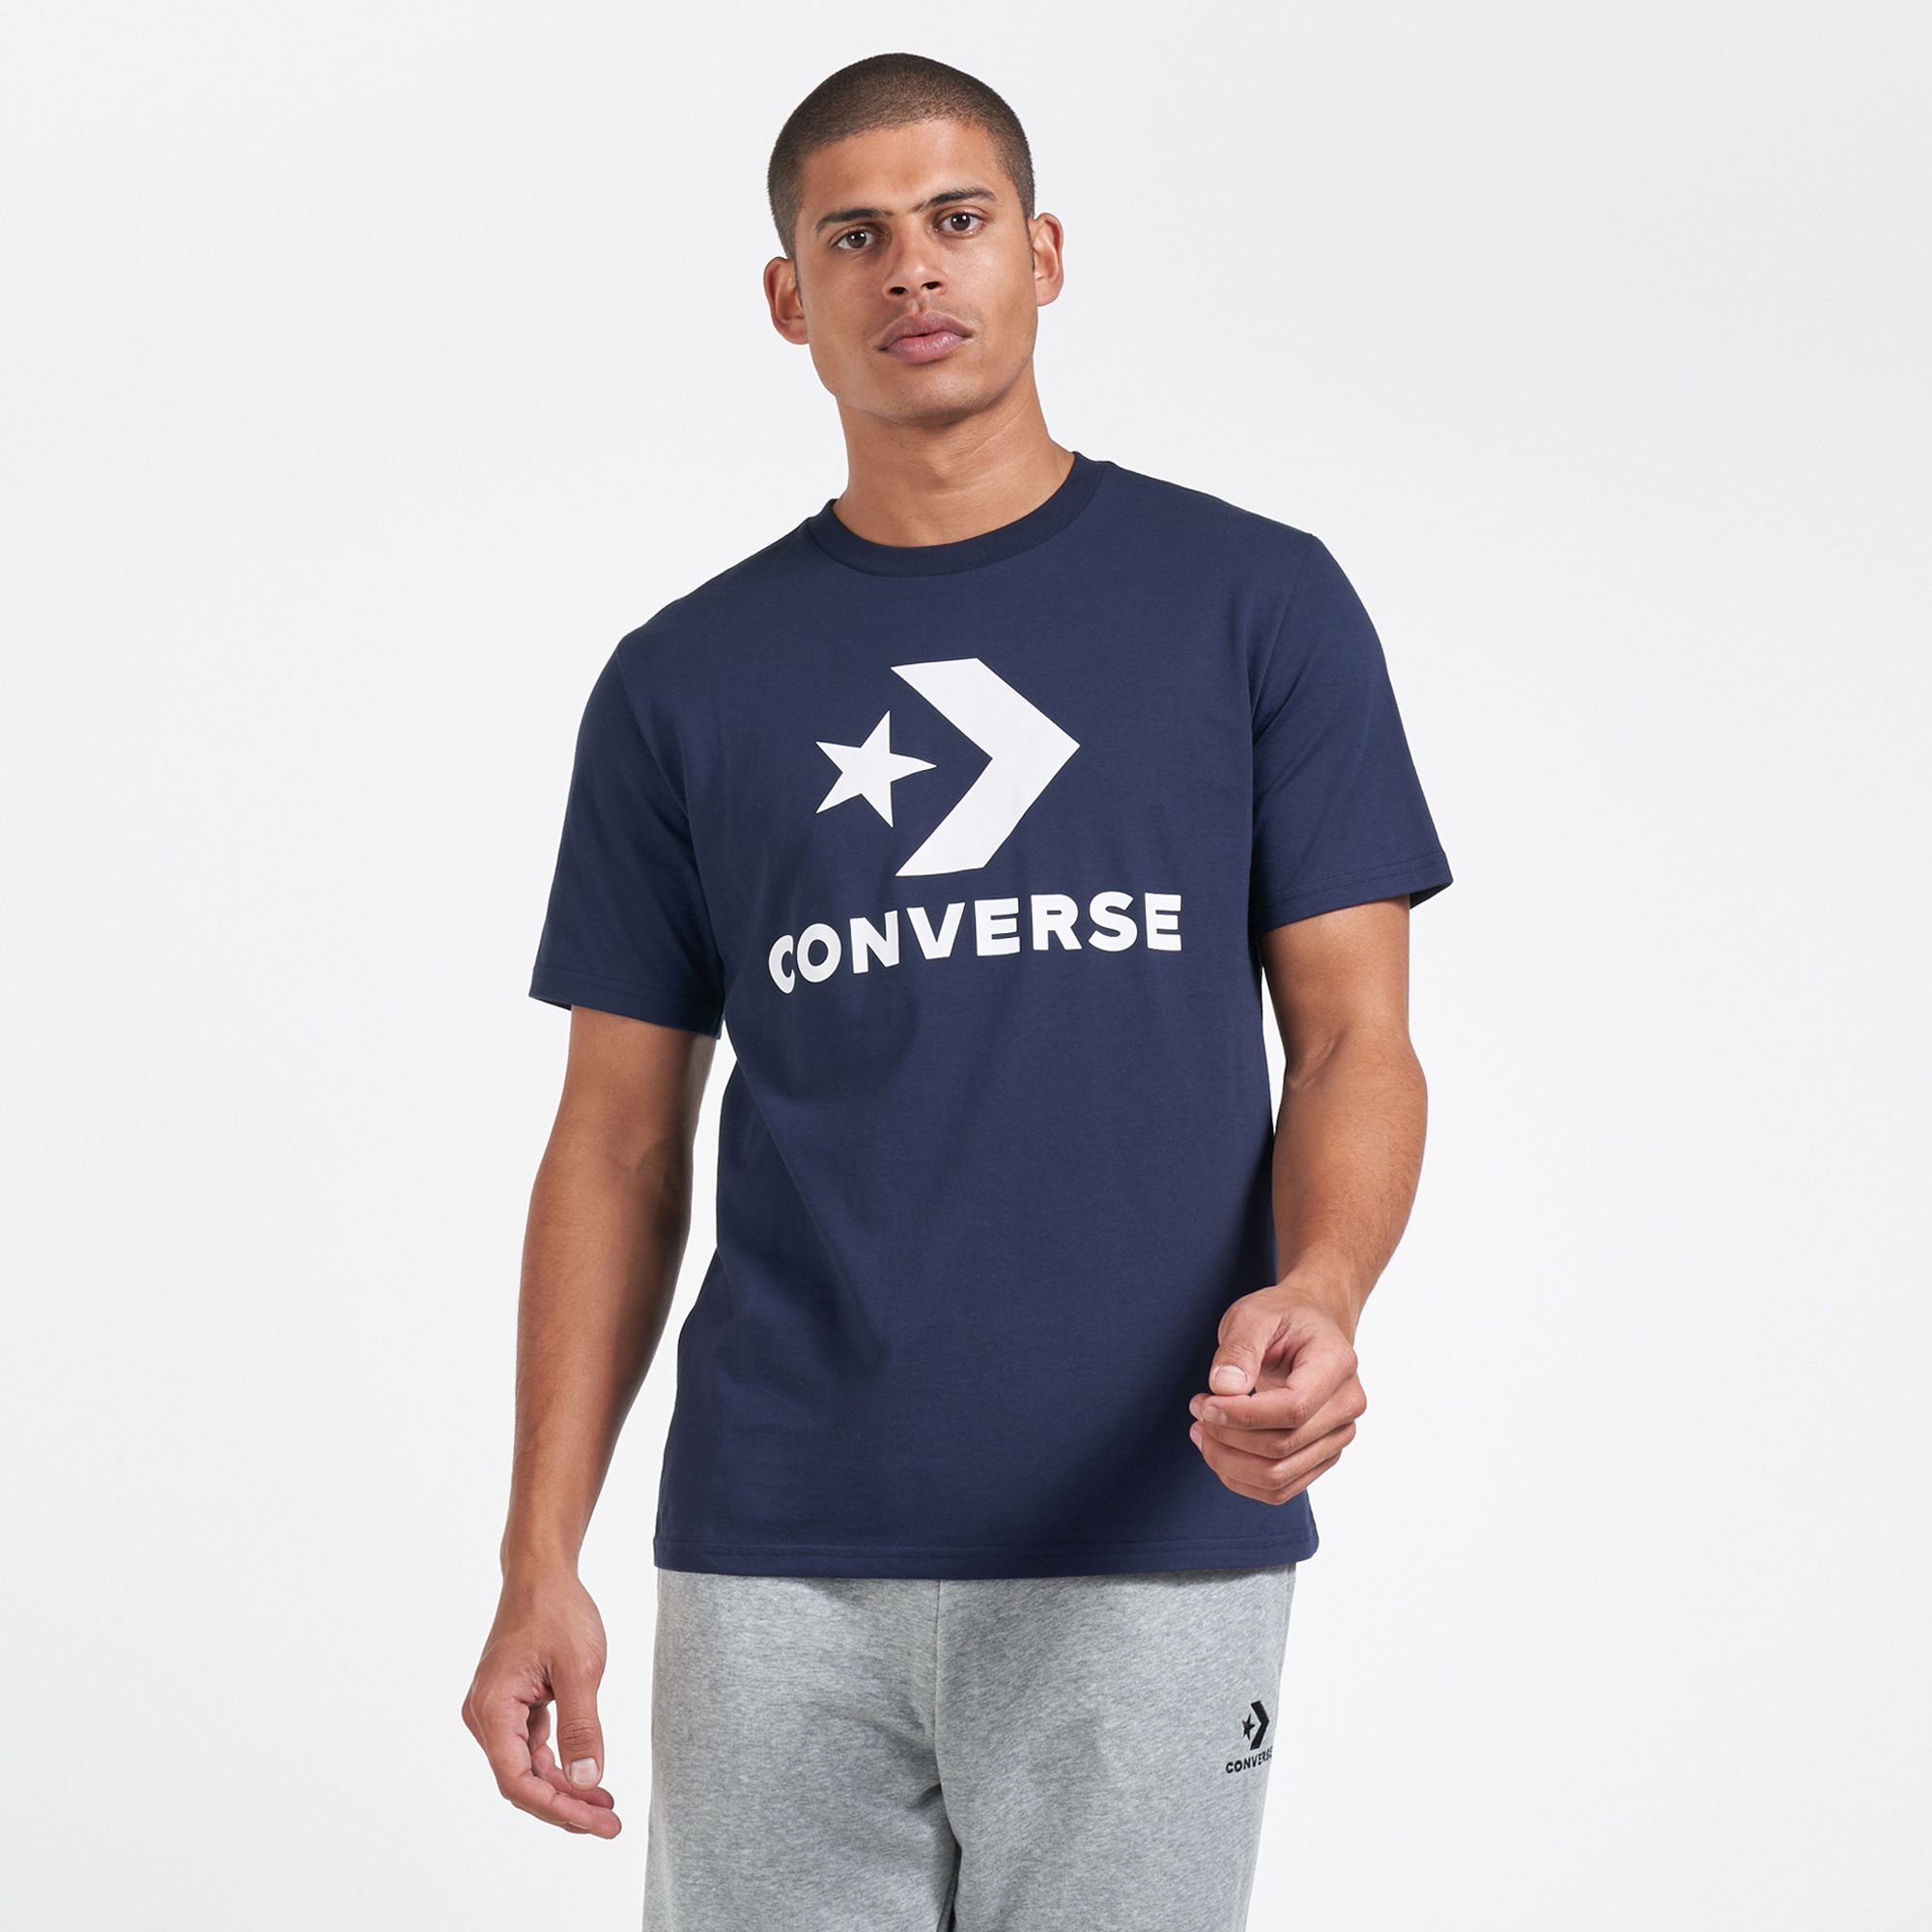 converse t shirt blue